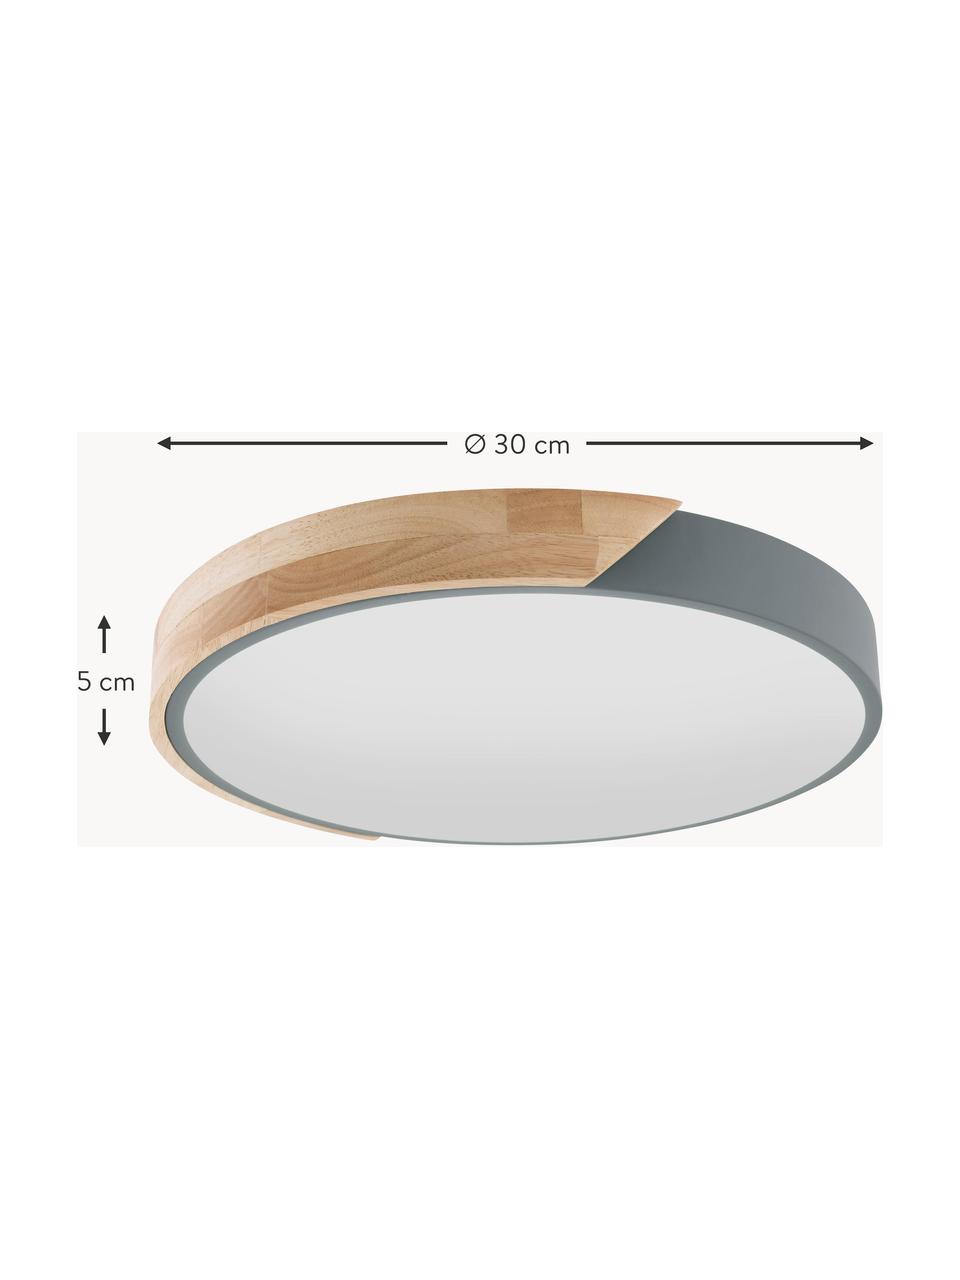 Malé stropní LED svítidlo Benoa, Dubové dřevo, šedá, Ø 30 cm, V 5 cm